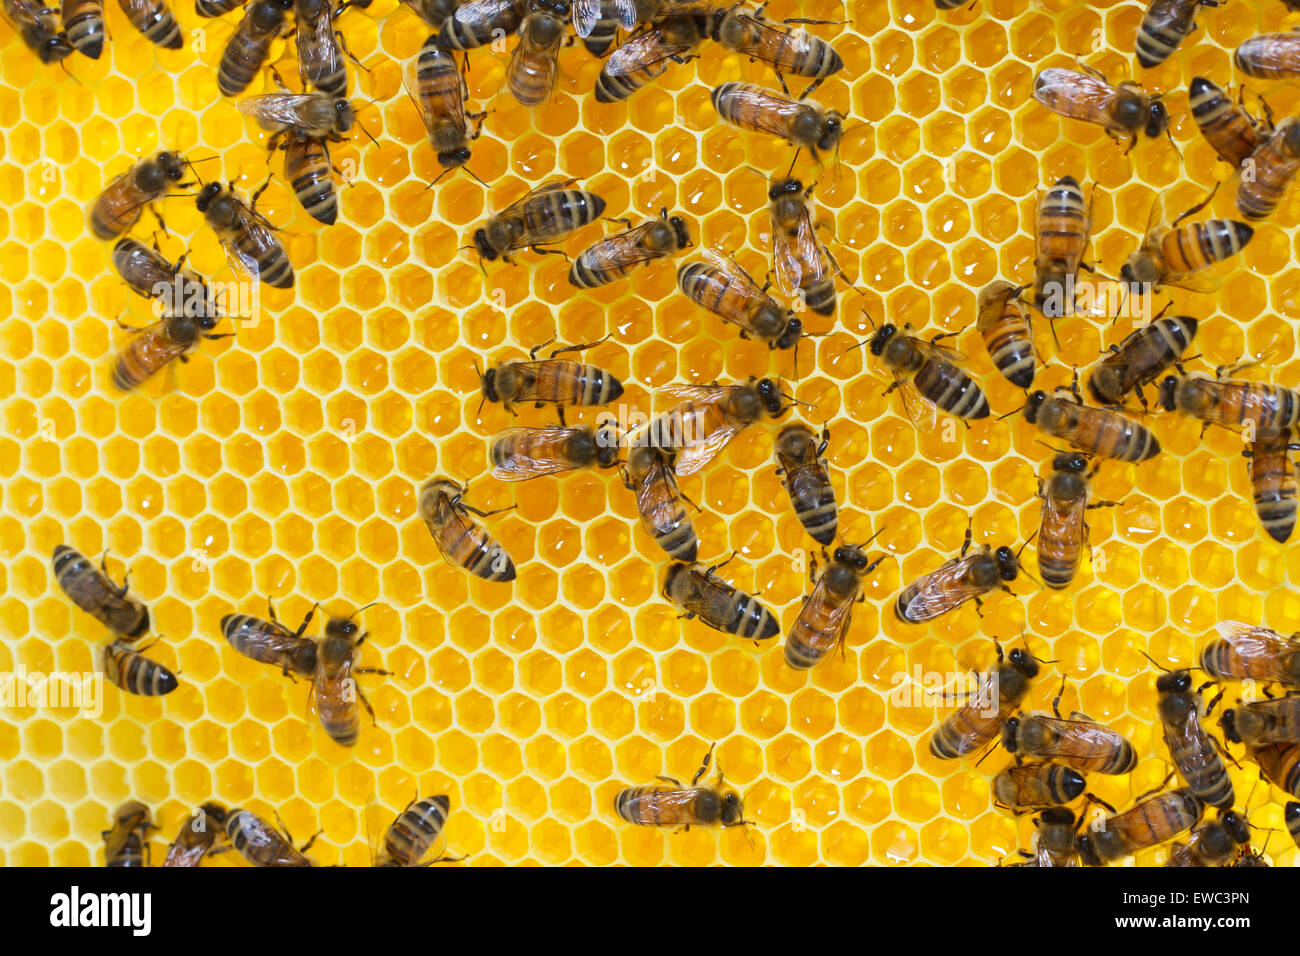 Les abeilles travaillent sur des cellules de miel Banque D'Images